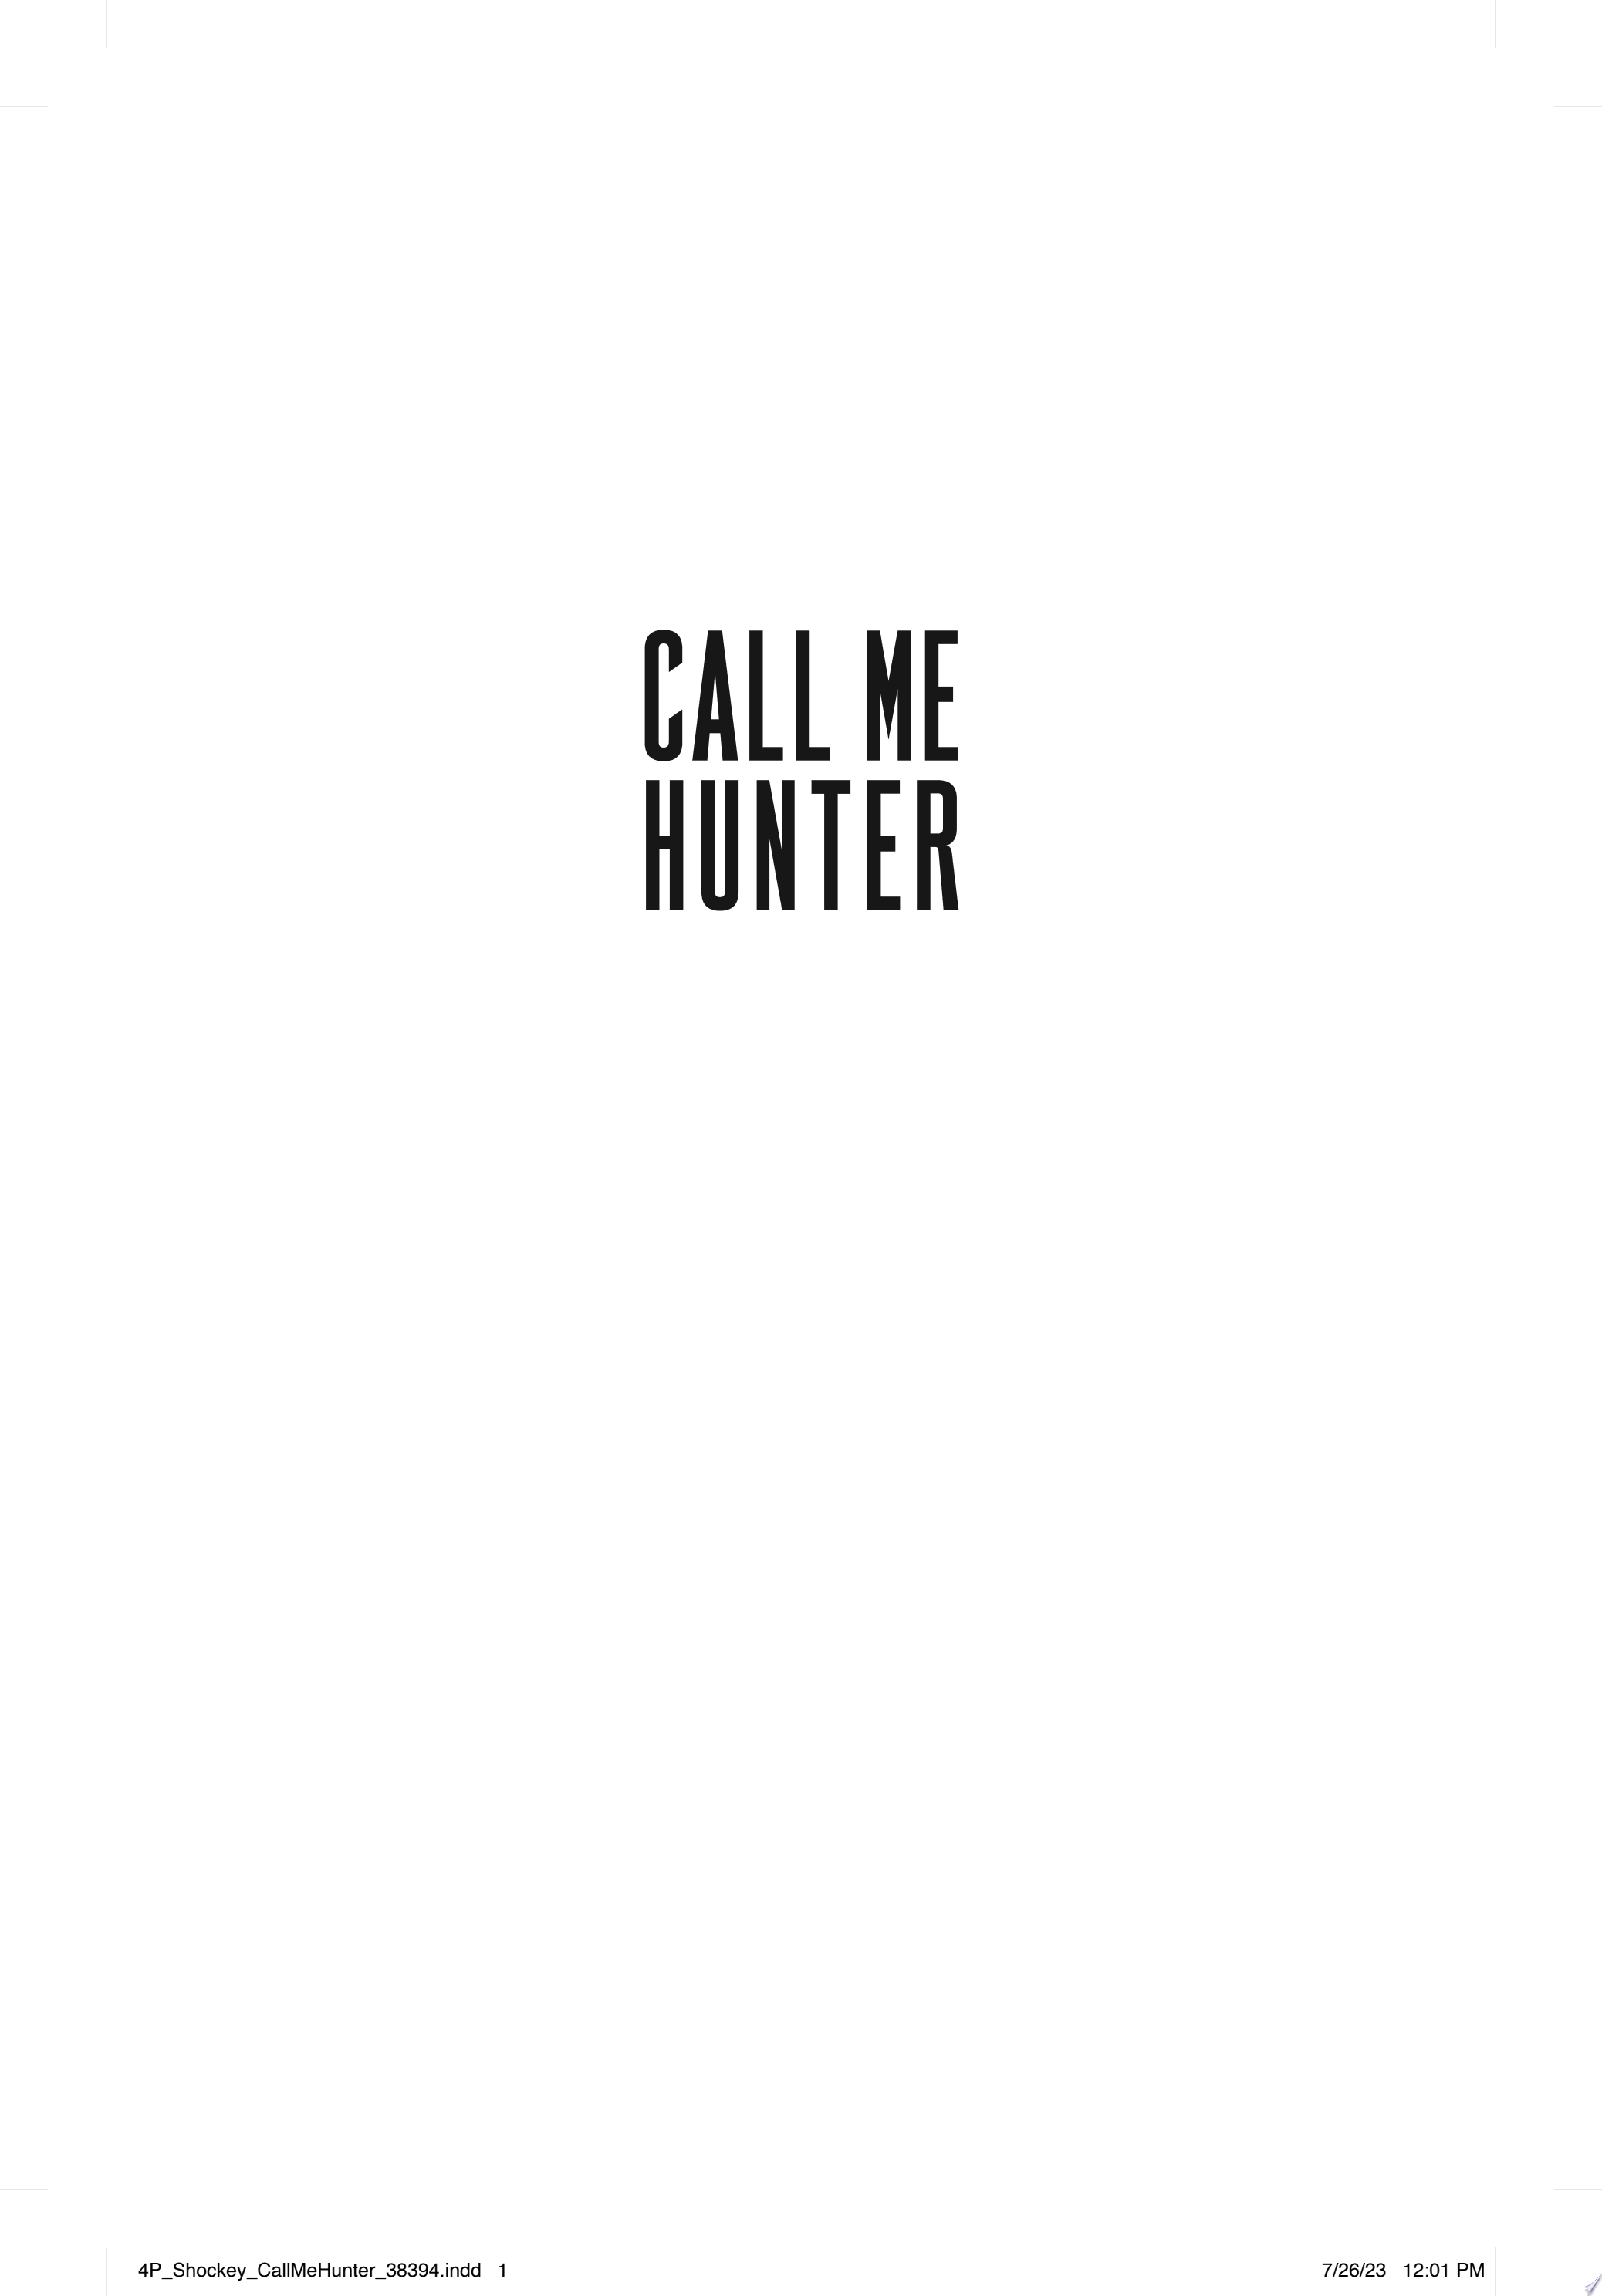 Image for "Call Me Hunter"